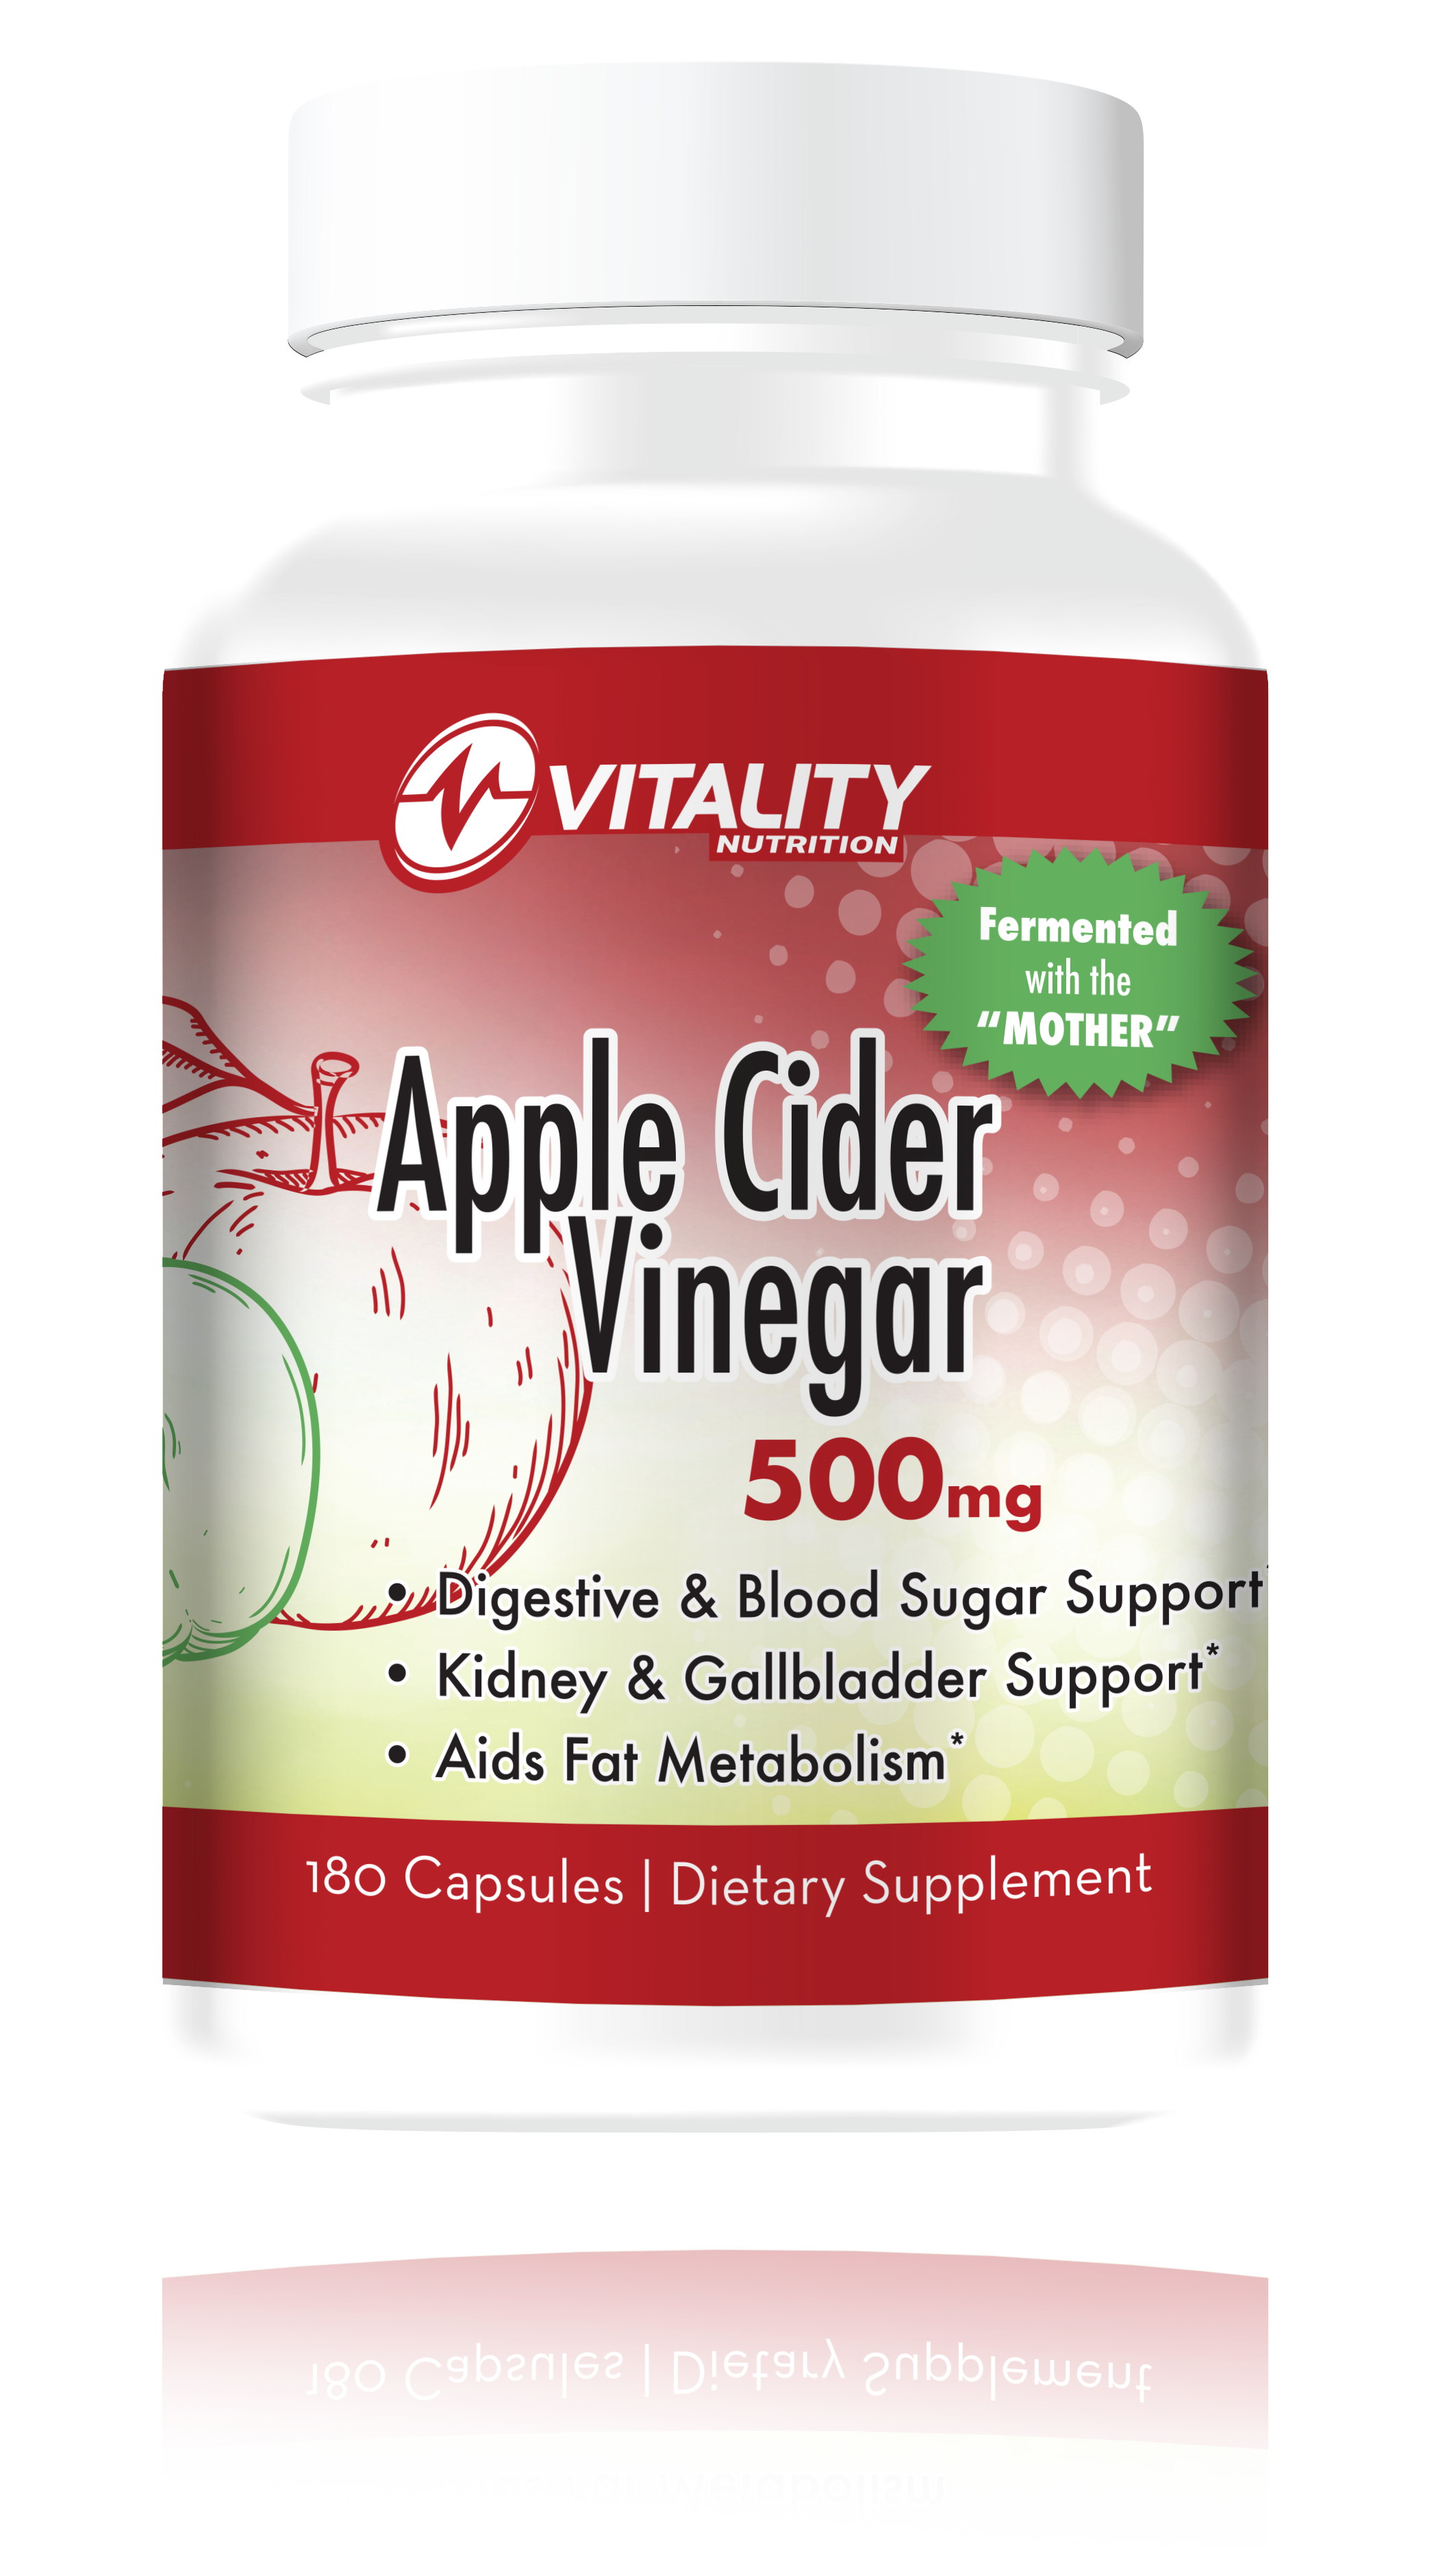 NEW! Vitality Nutrition Fermented Apple Cider Vinegar 500mg